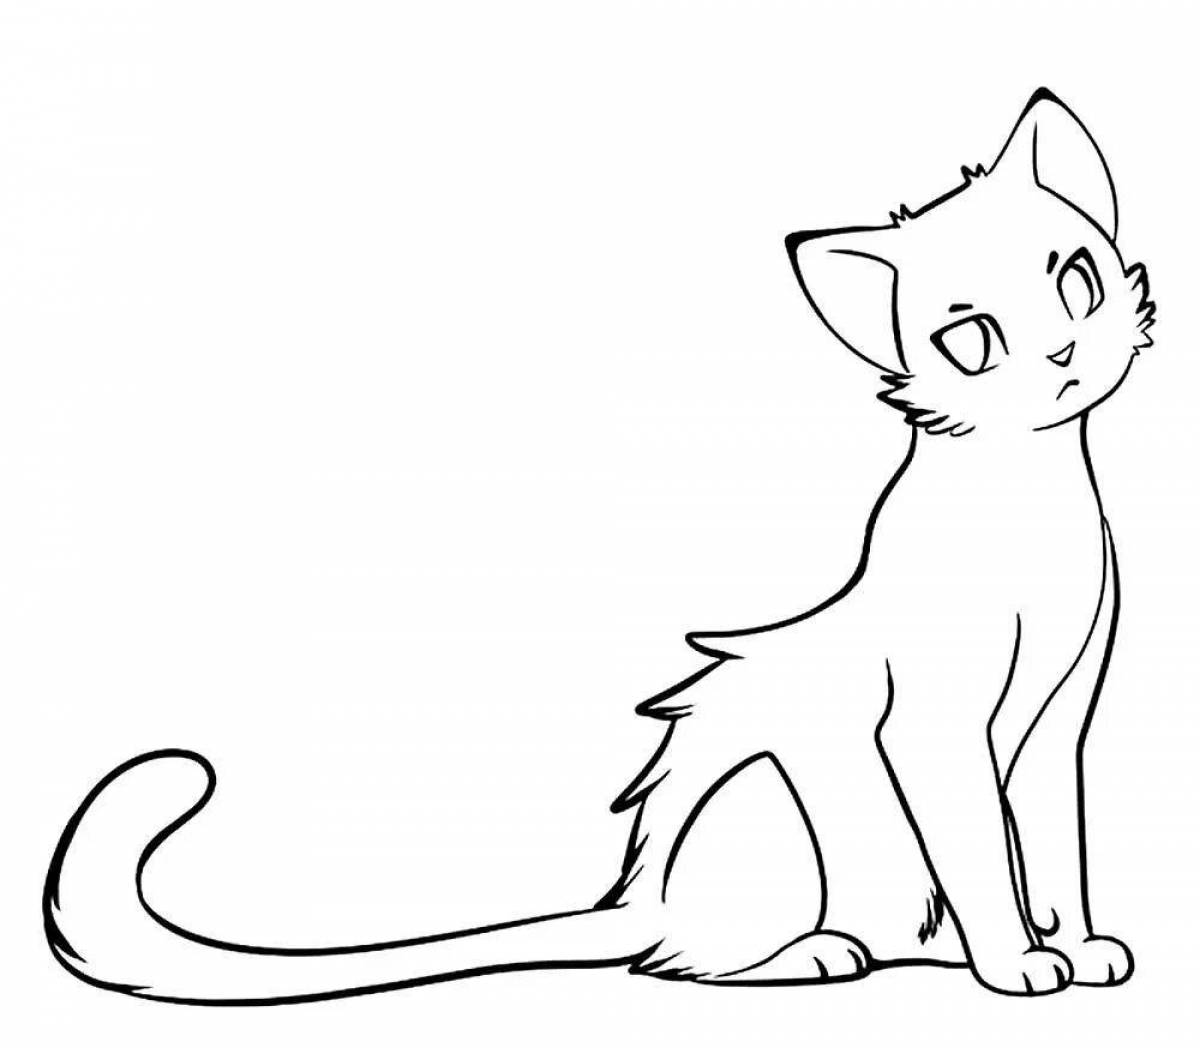 Красочная страница раскраски аниме-кошки